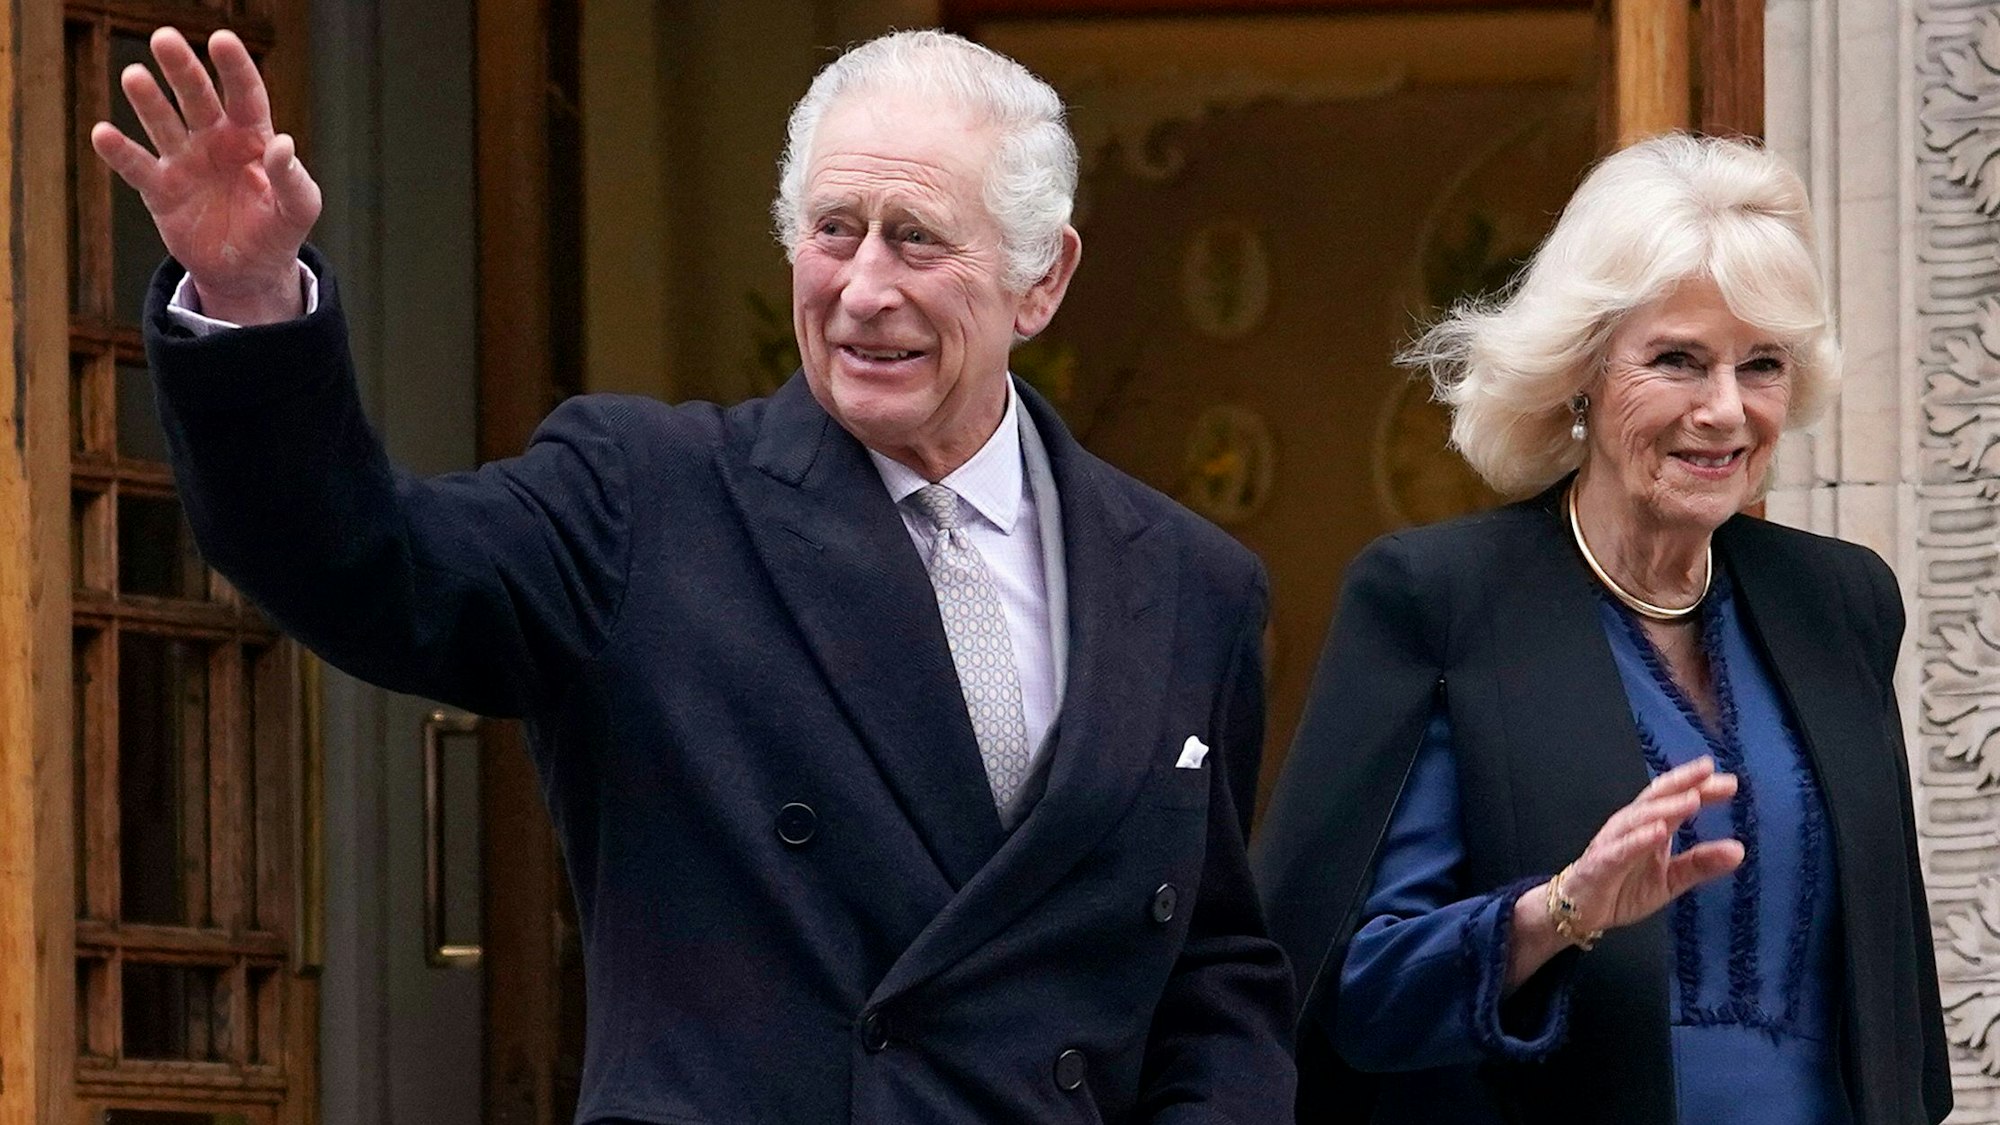 König Charles III. und Königin Camilla verlassen die Londoner Klinik, nachdem König Charles III. wegen einer vergrößerten Prostata behandelt wurde.